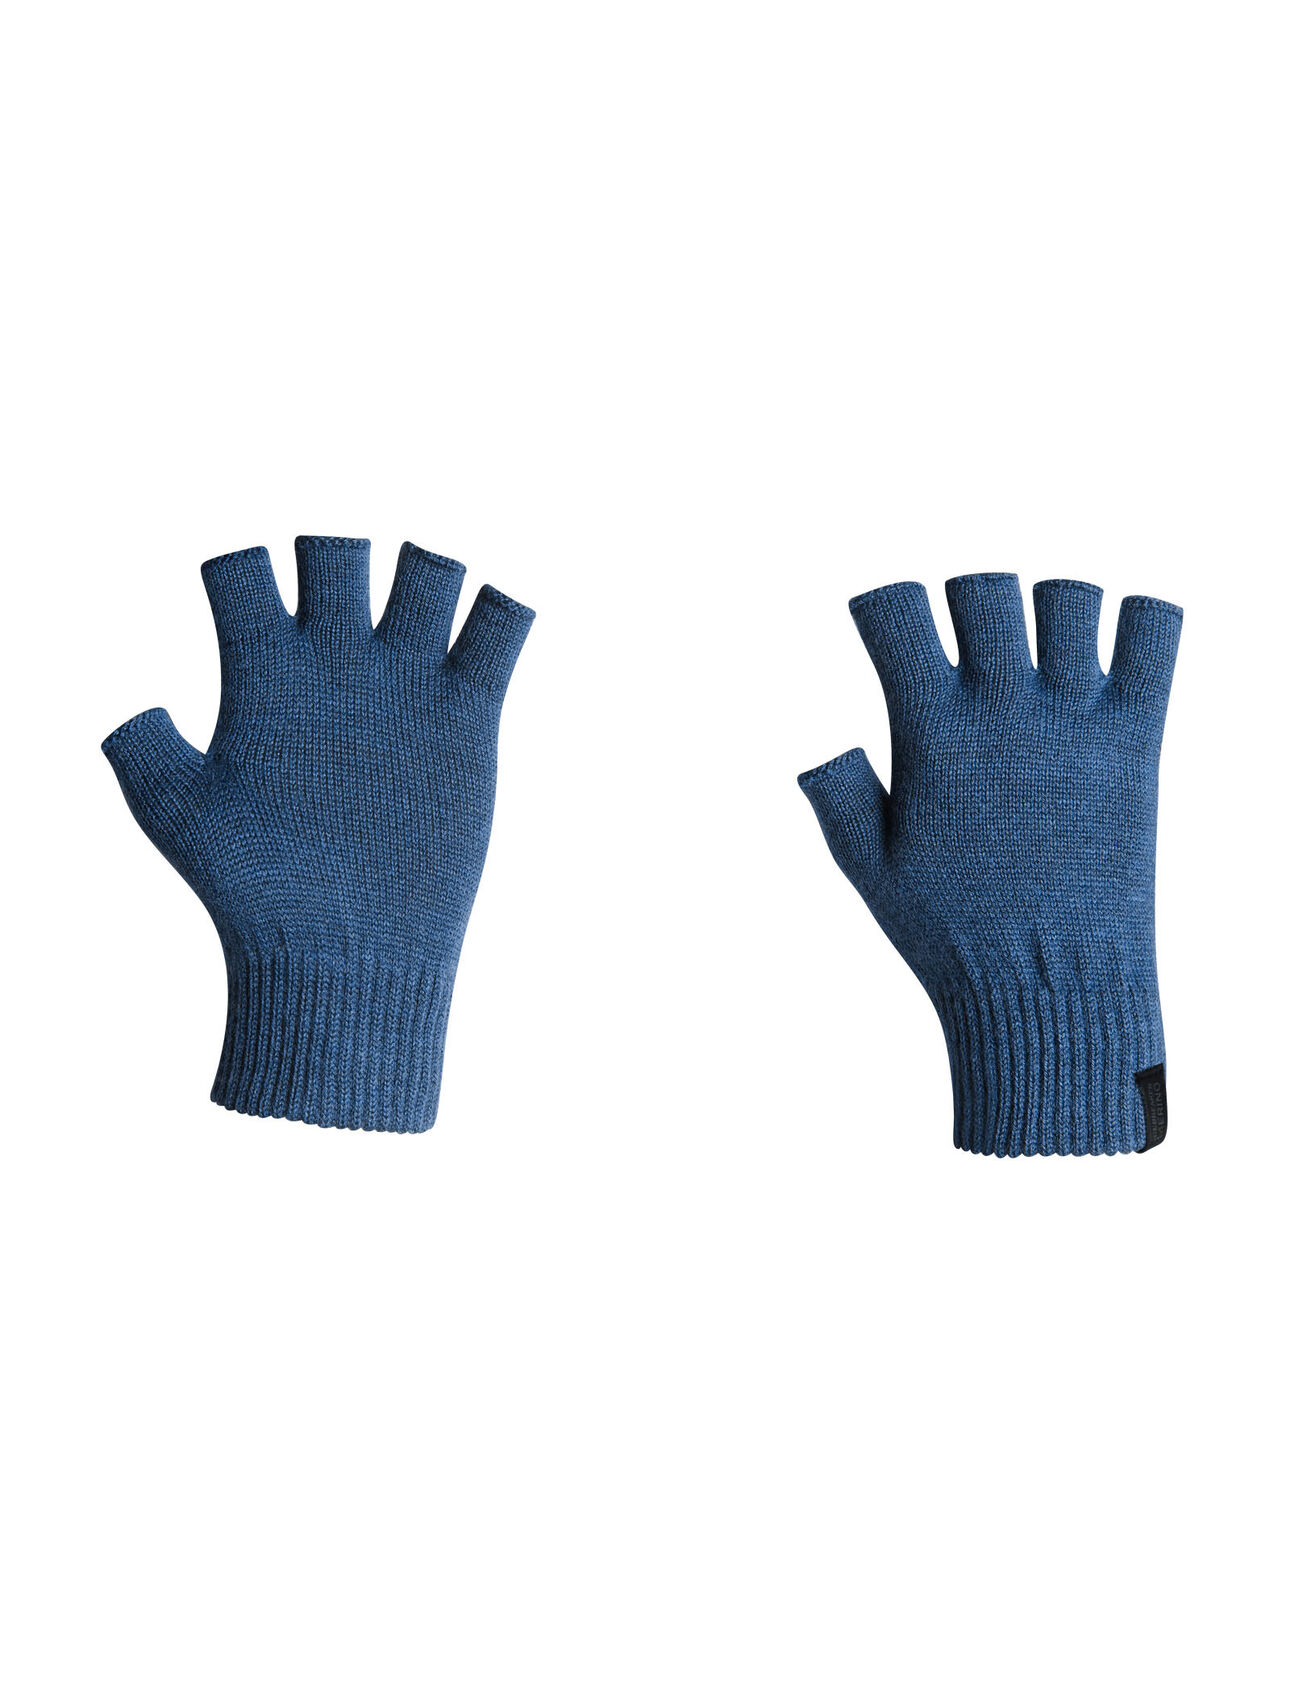 Highline Fingerless Gloves